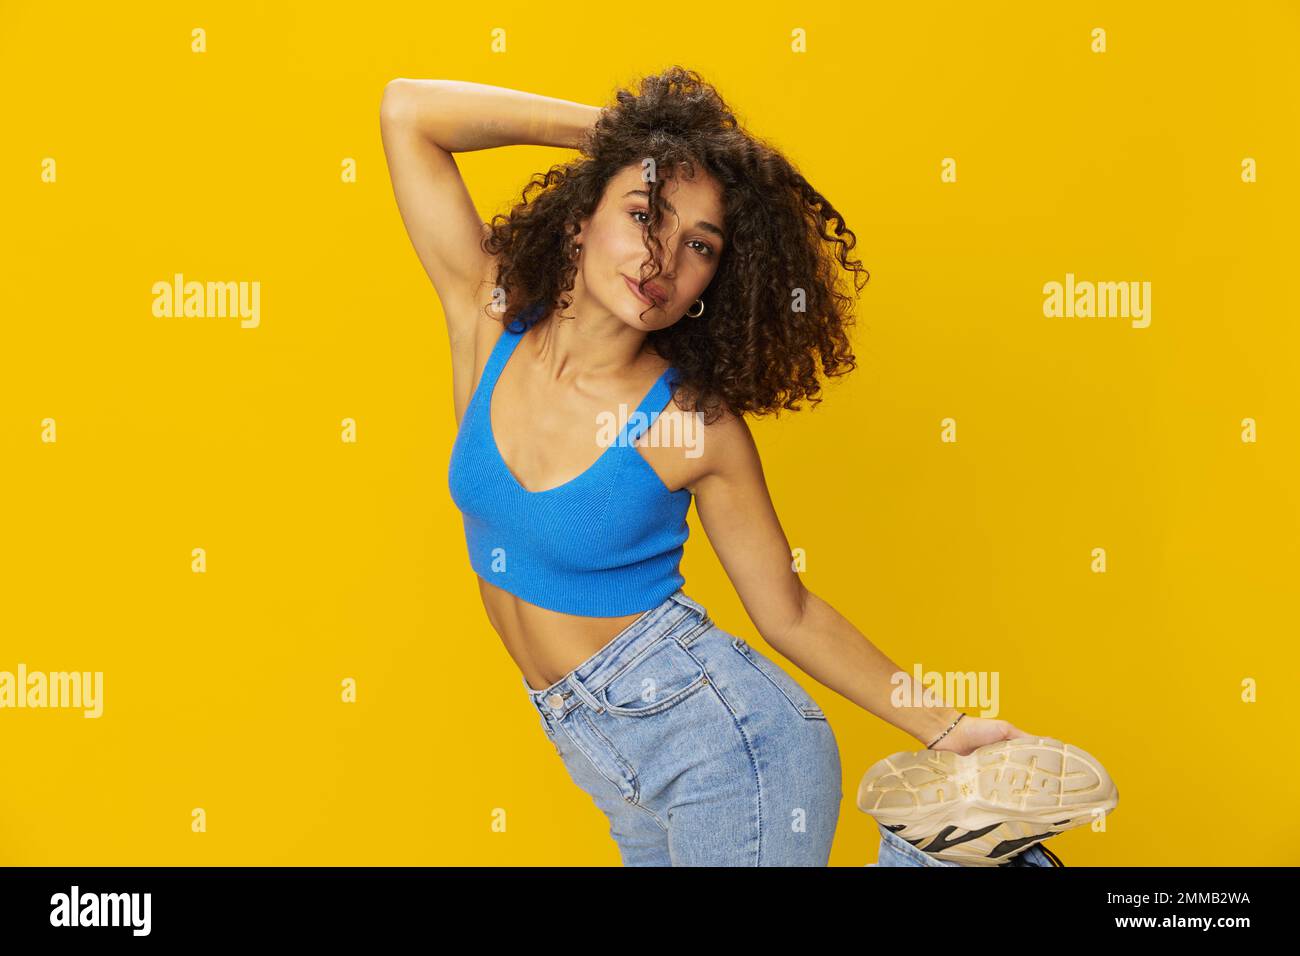 Femme aux cheveux bouclés afro dans un t-shirt bleu. signes de fond jaune avec ses mains, regarder dans la caméra, sourire avec les dents et le bonheur, copier Banque D'Images